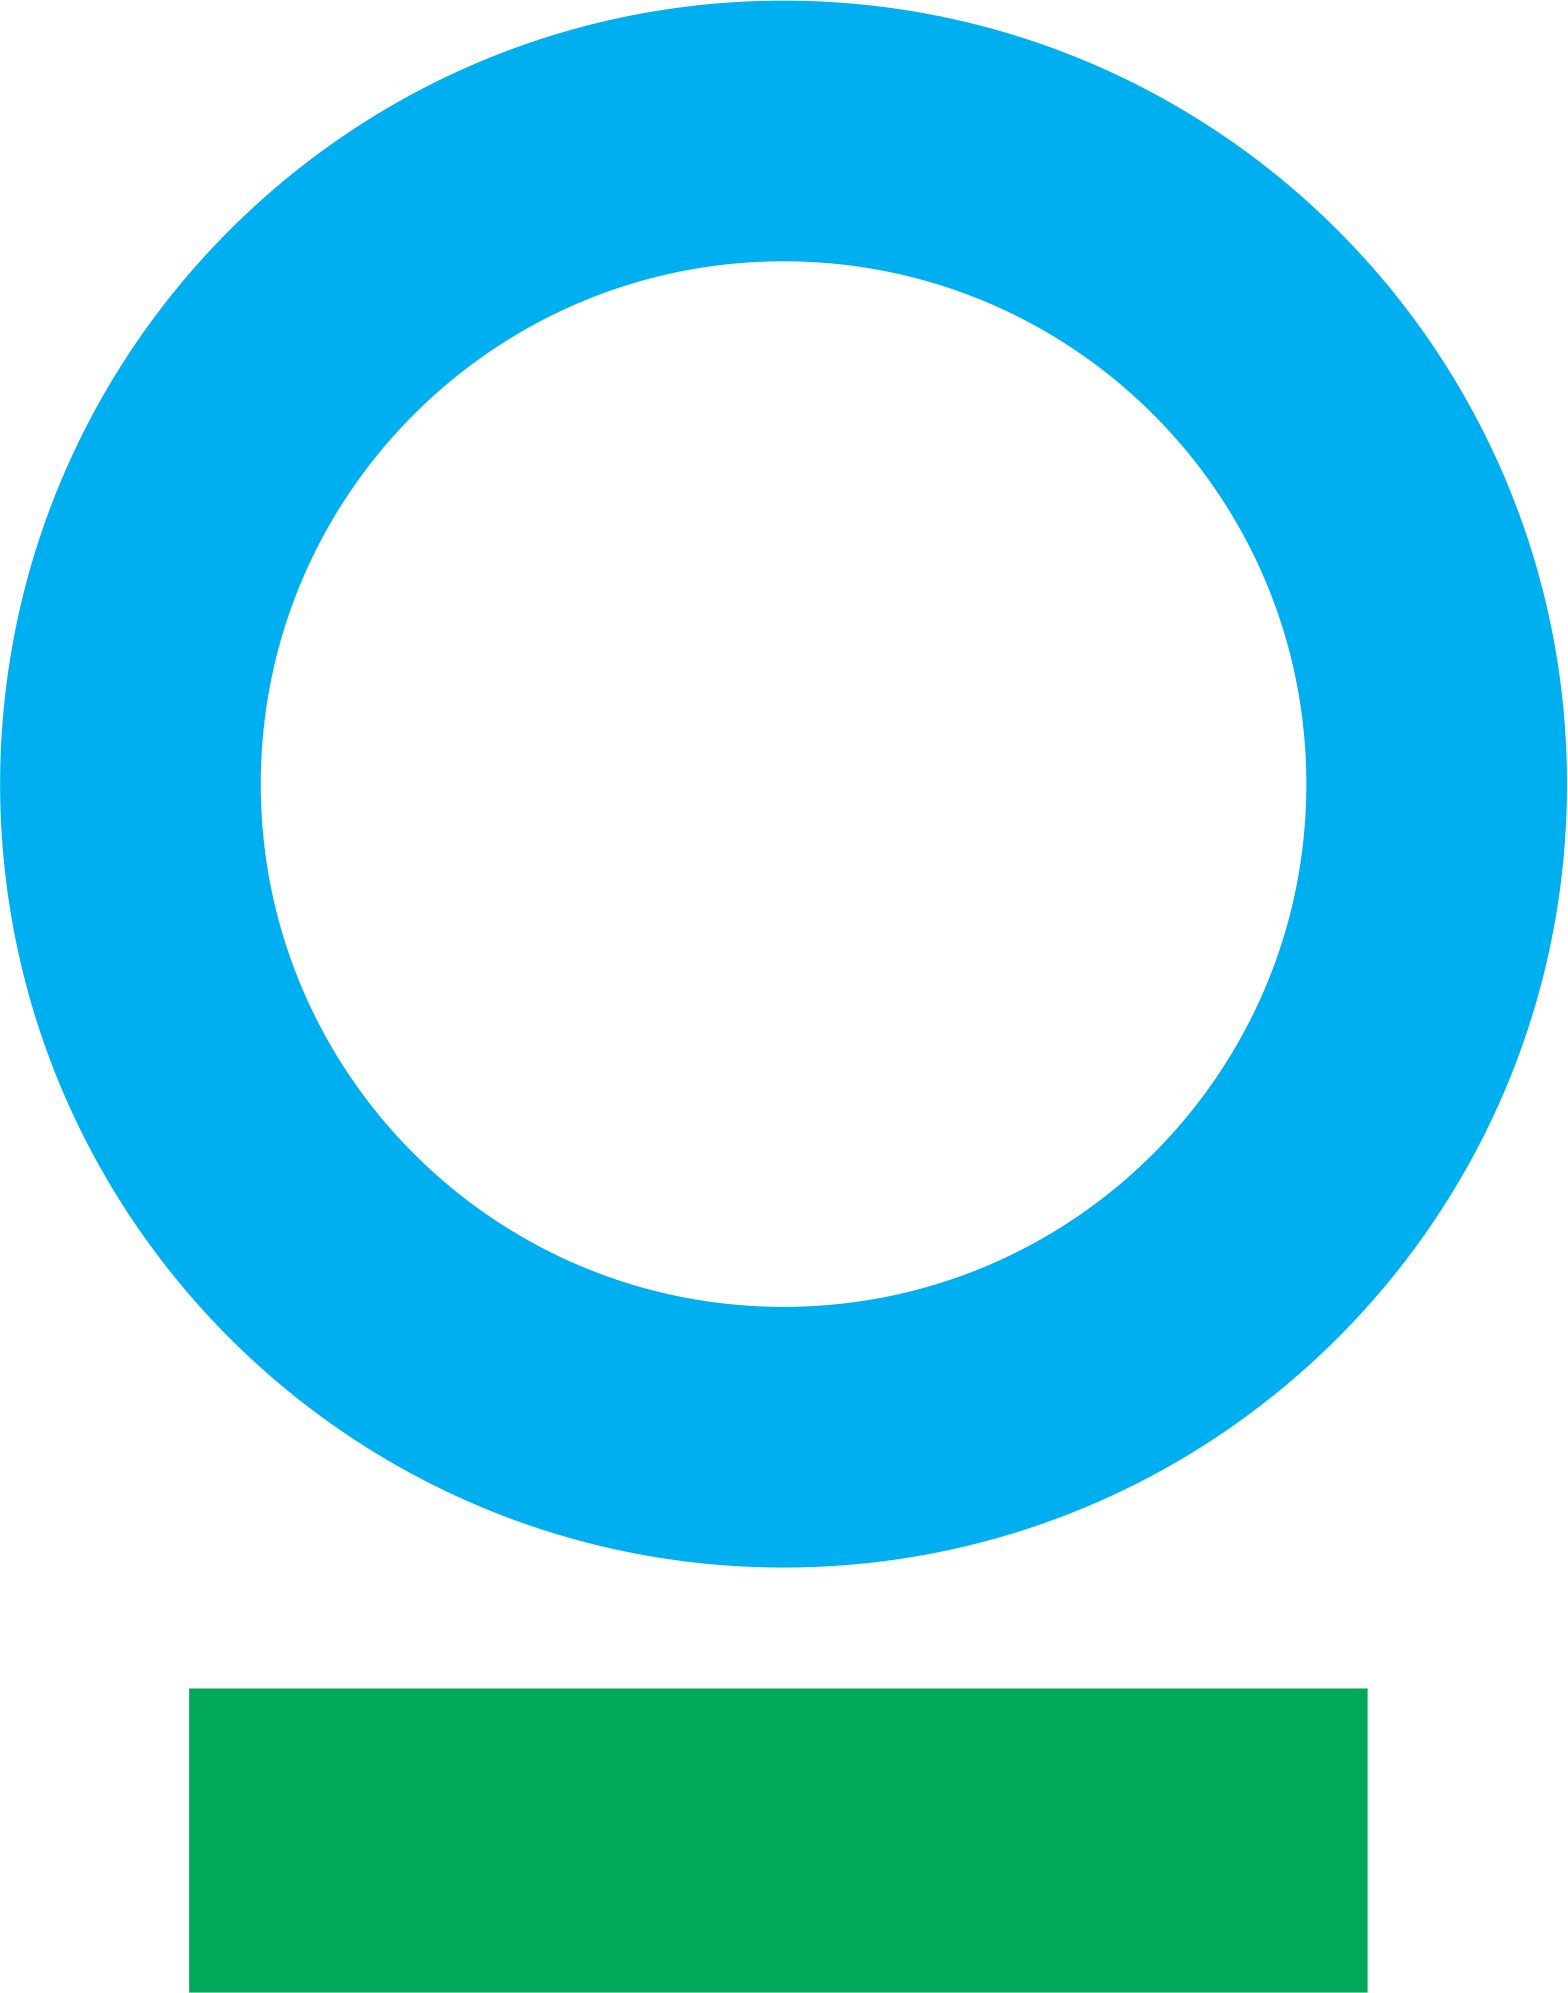 CI logo